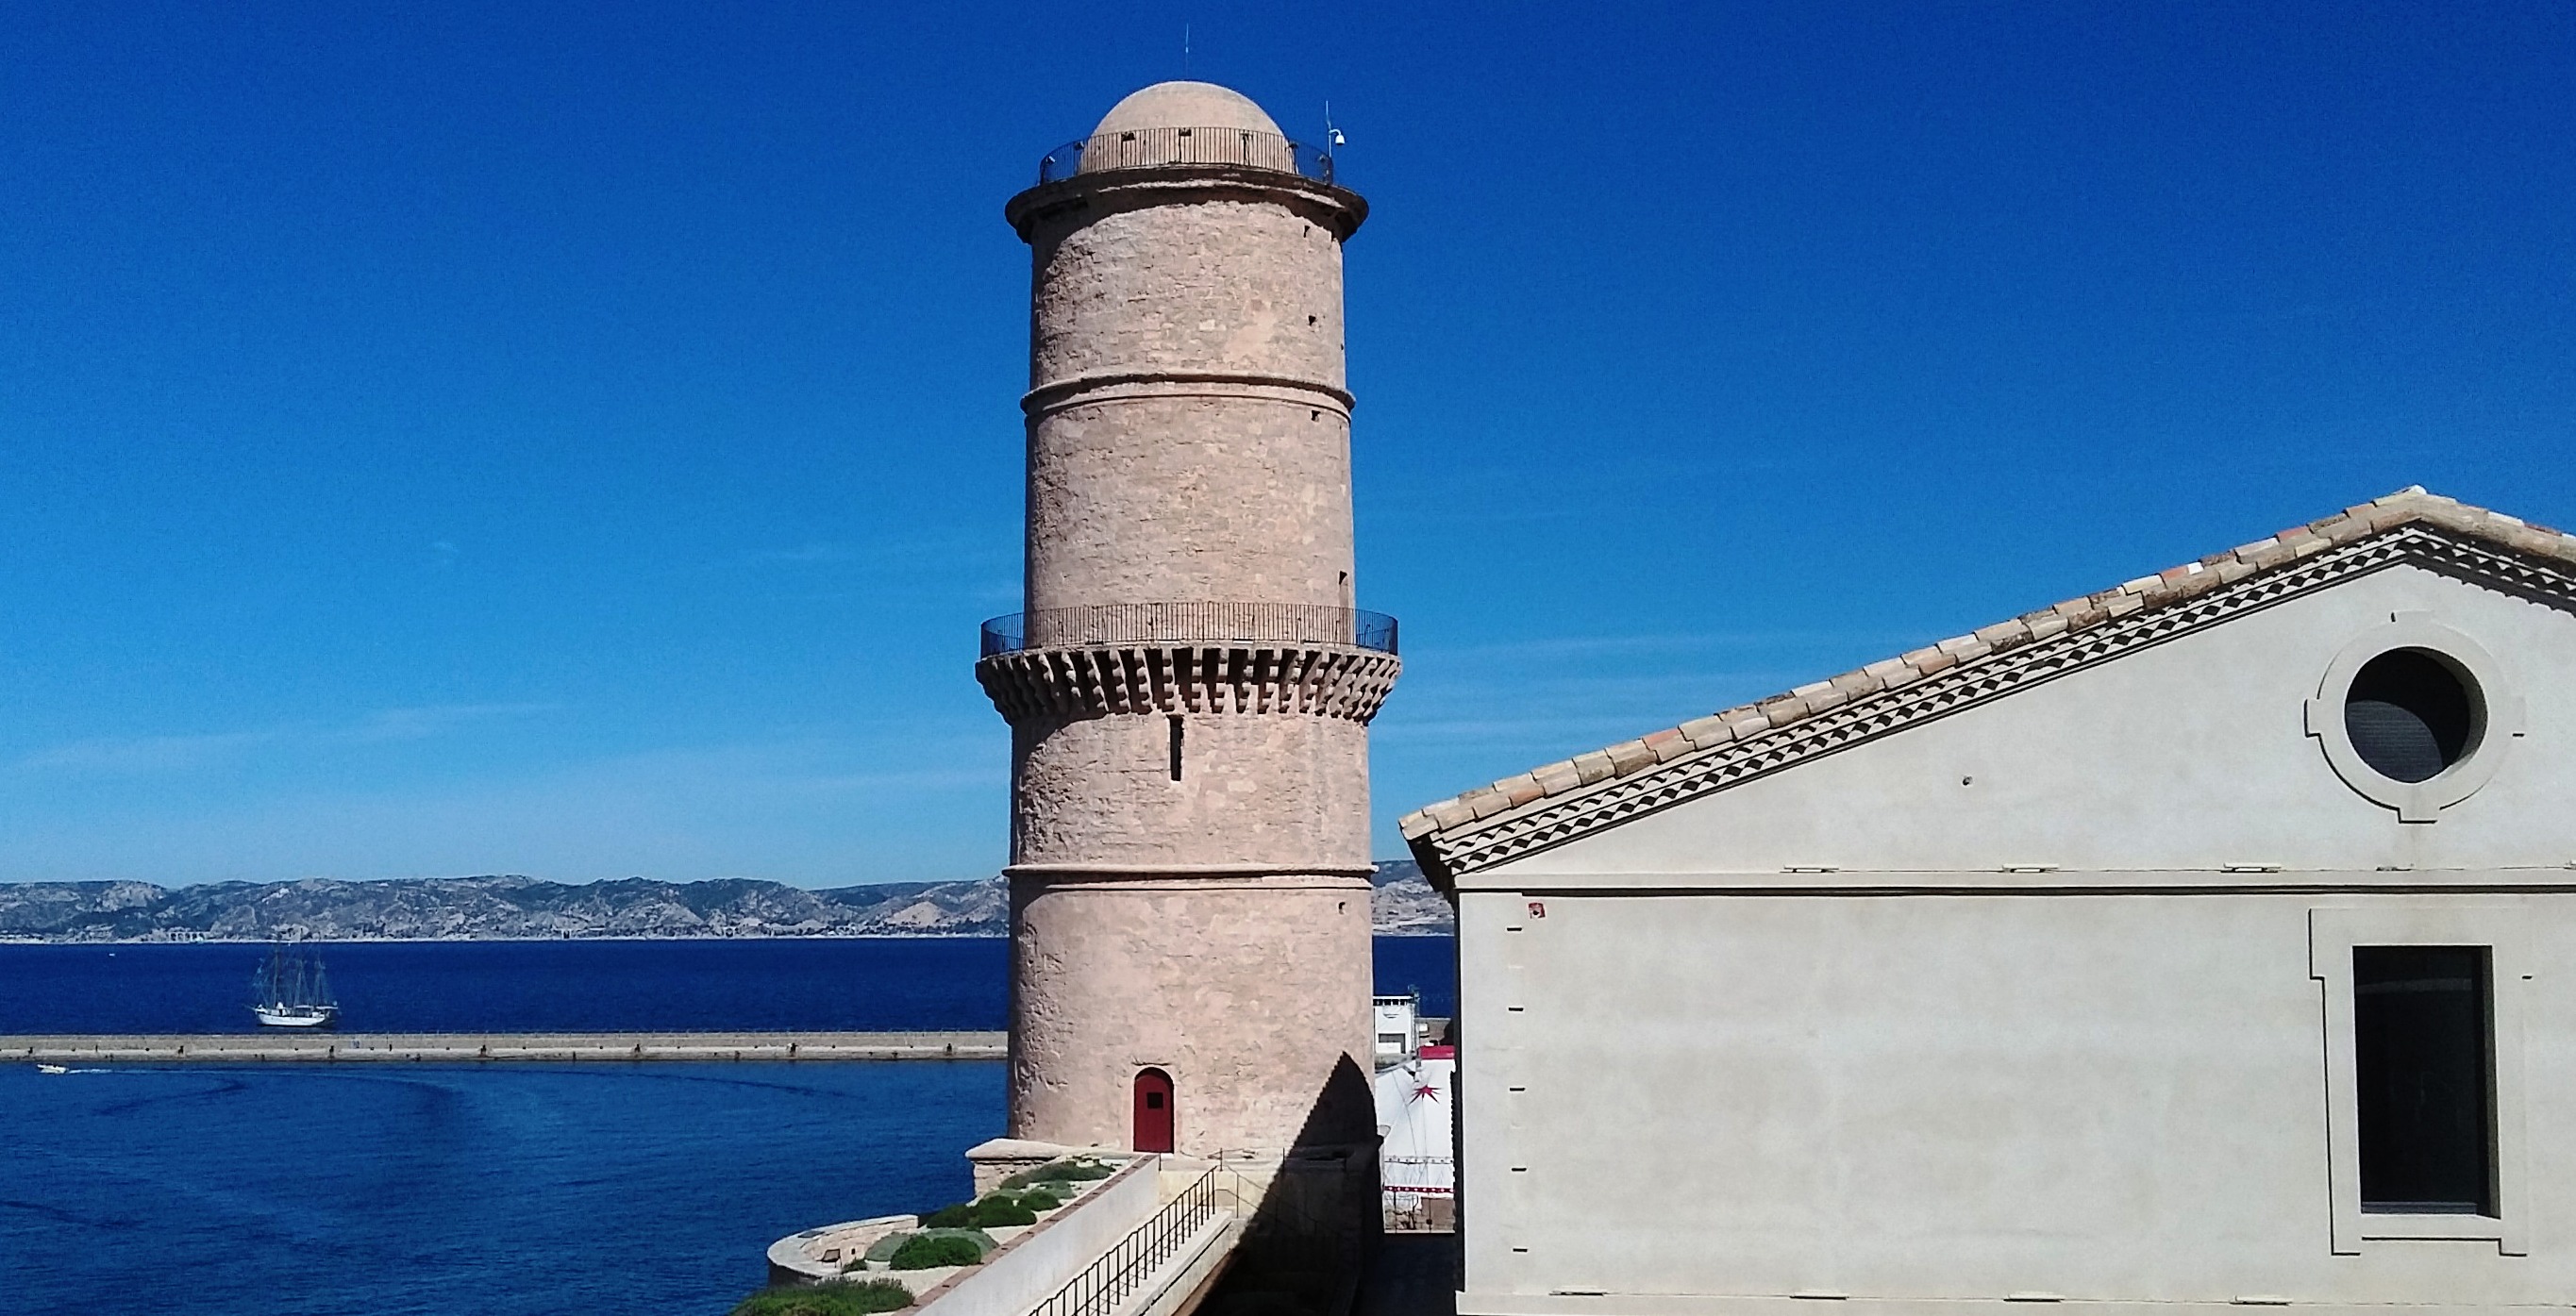 Fort Saint Jean in Marseille